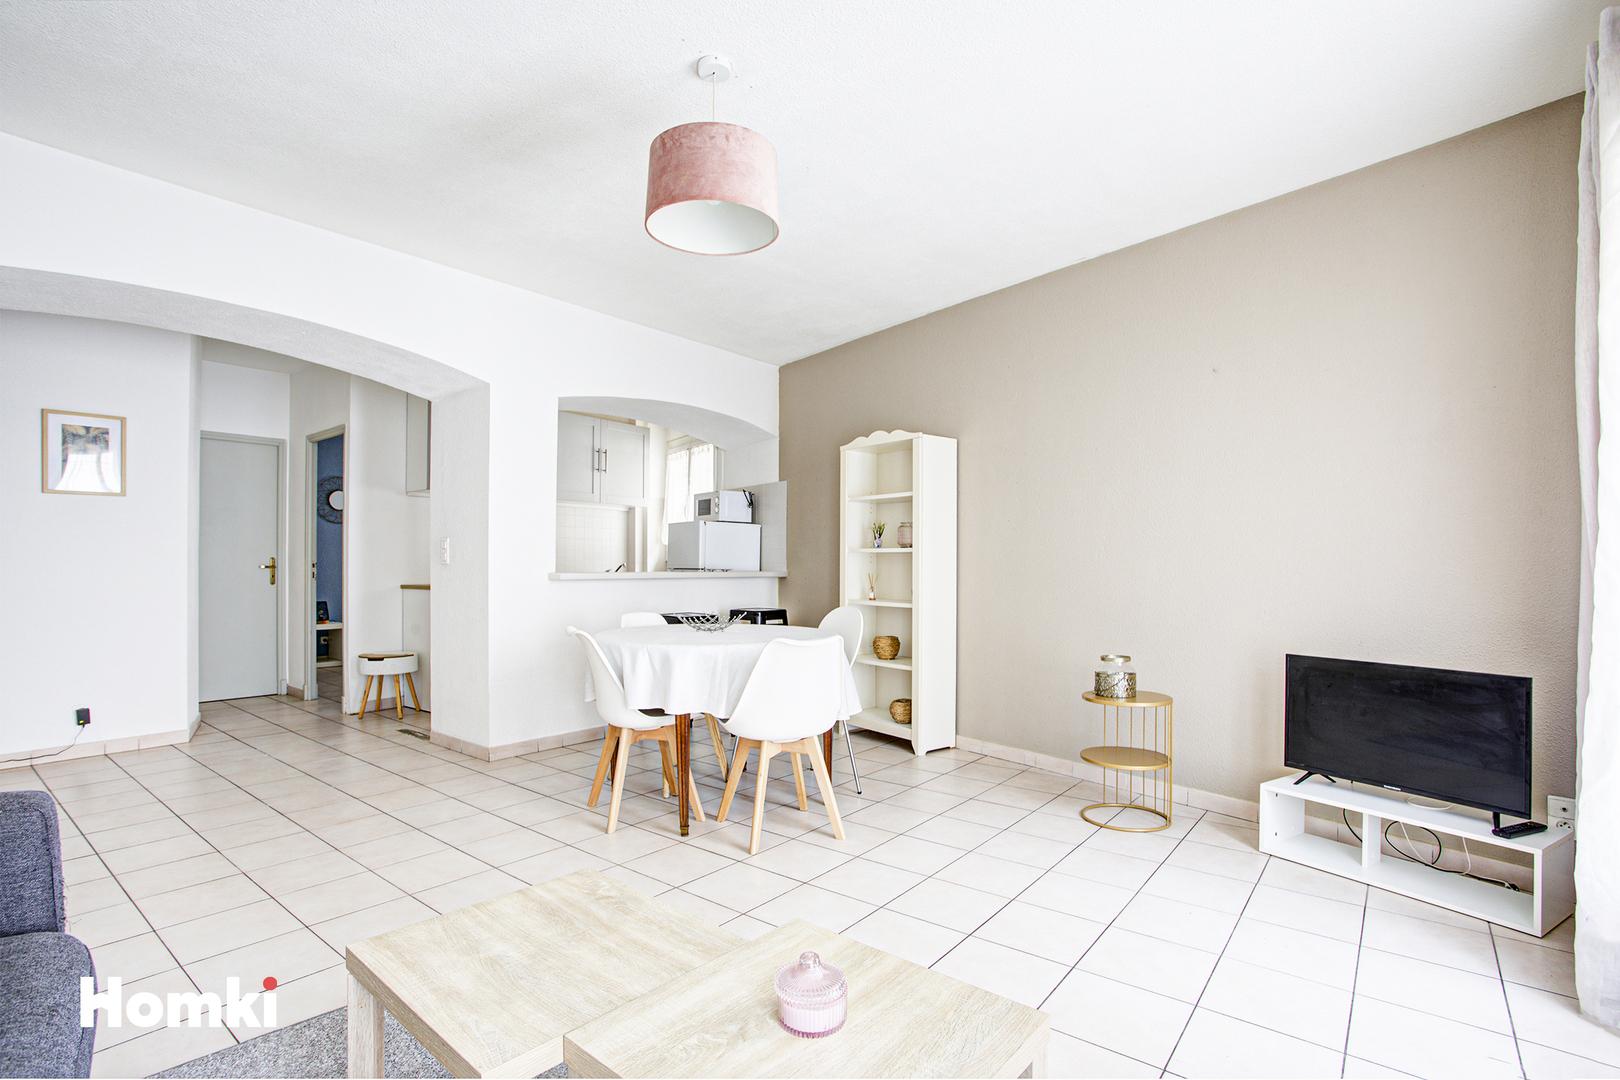 Homki - Vente Appartement  de 51.86 m² à Perpignan 66000